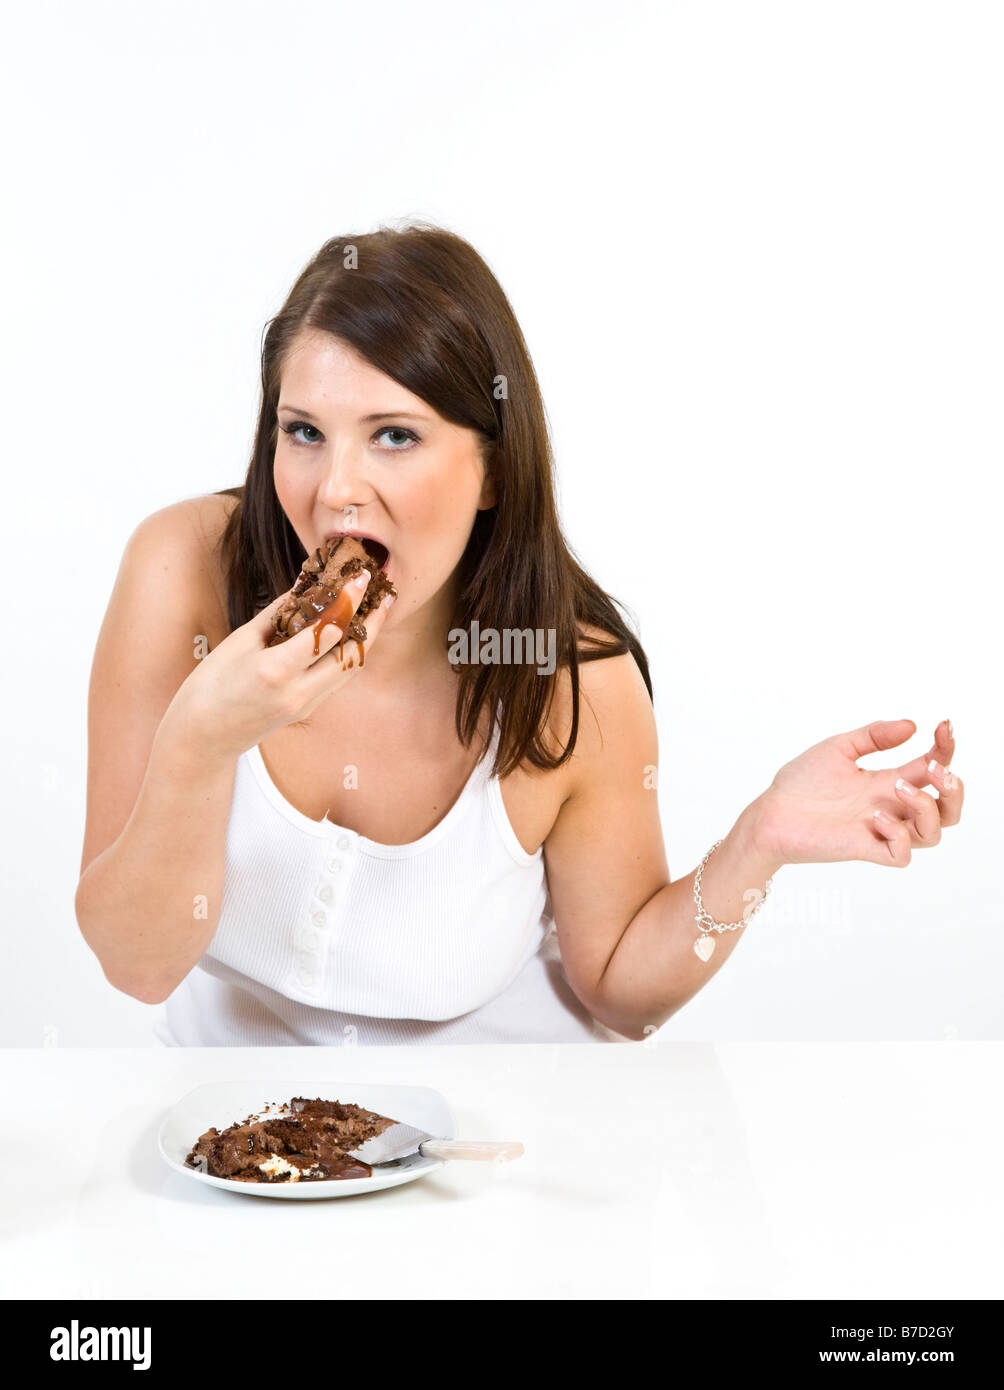 Attraente giovane donna messily mangiare una fetta di torta al cioccolato. Foto Stock